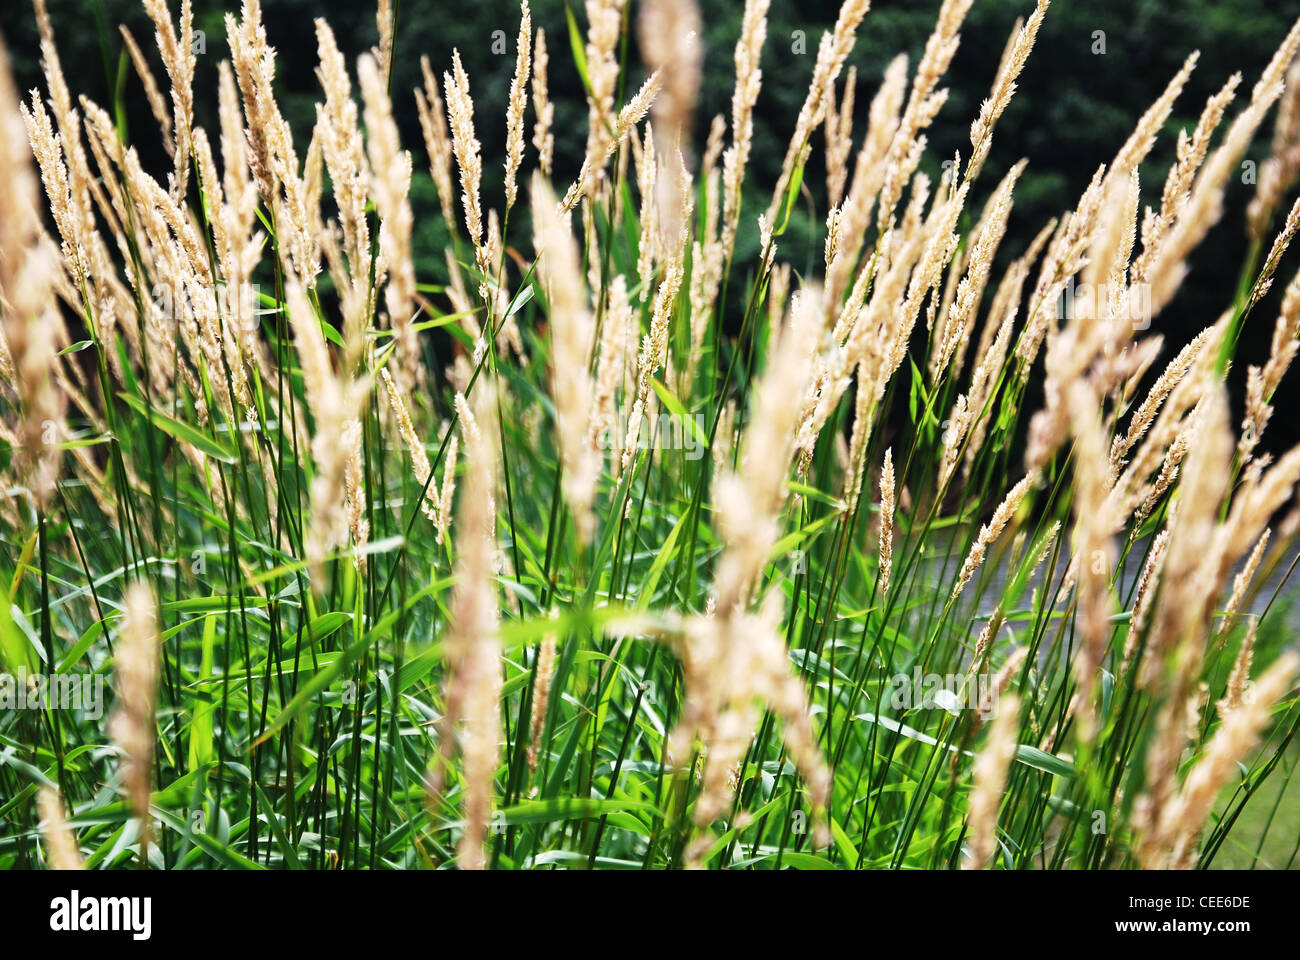 Impianto,l'erba,reed,texture,verde,campo,parco,di canna, Foto Stock